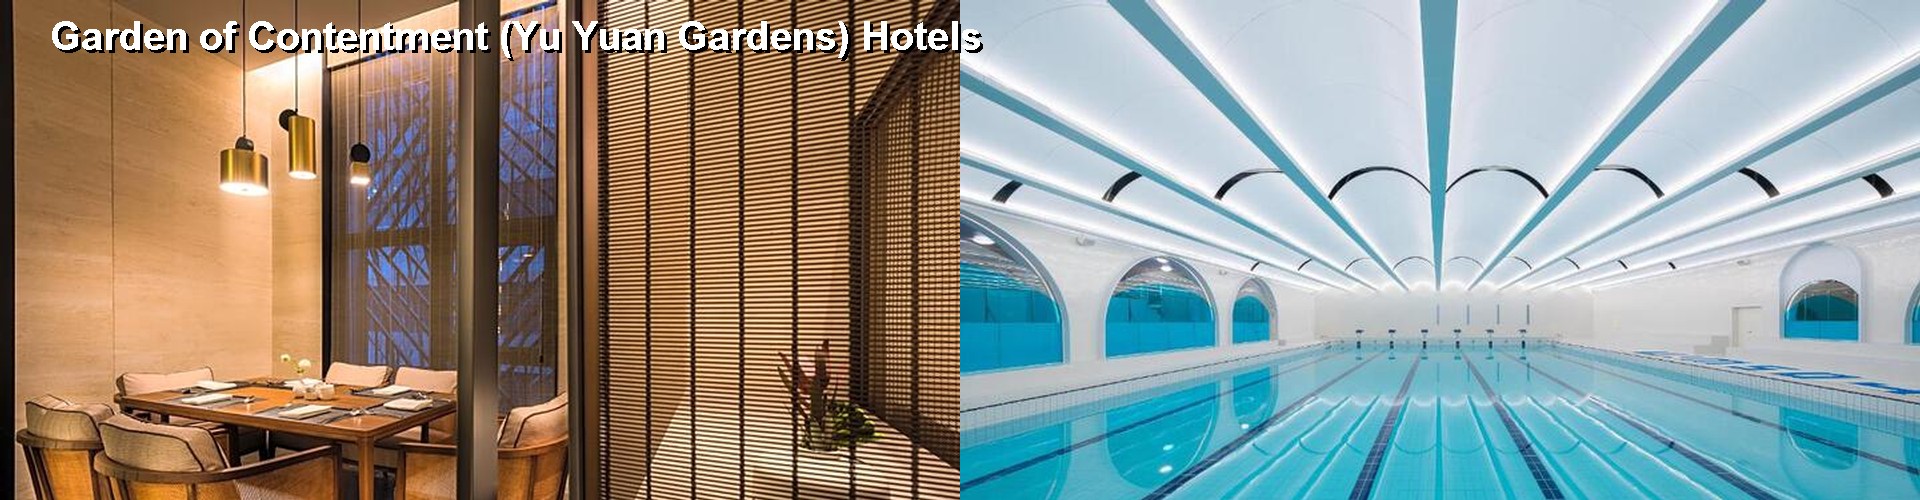 5 Best Hotels near Garden of Contentment (Yu Yuan Gardens)